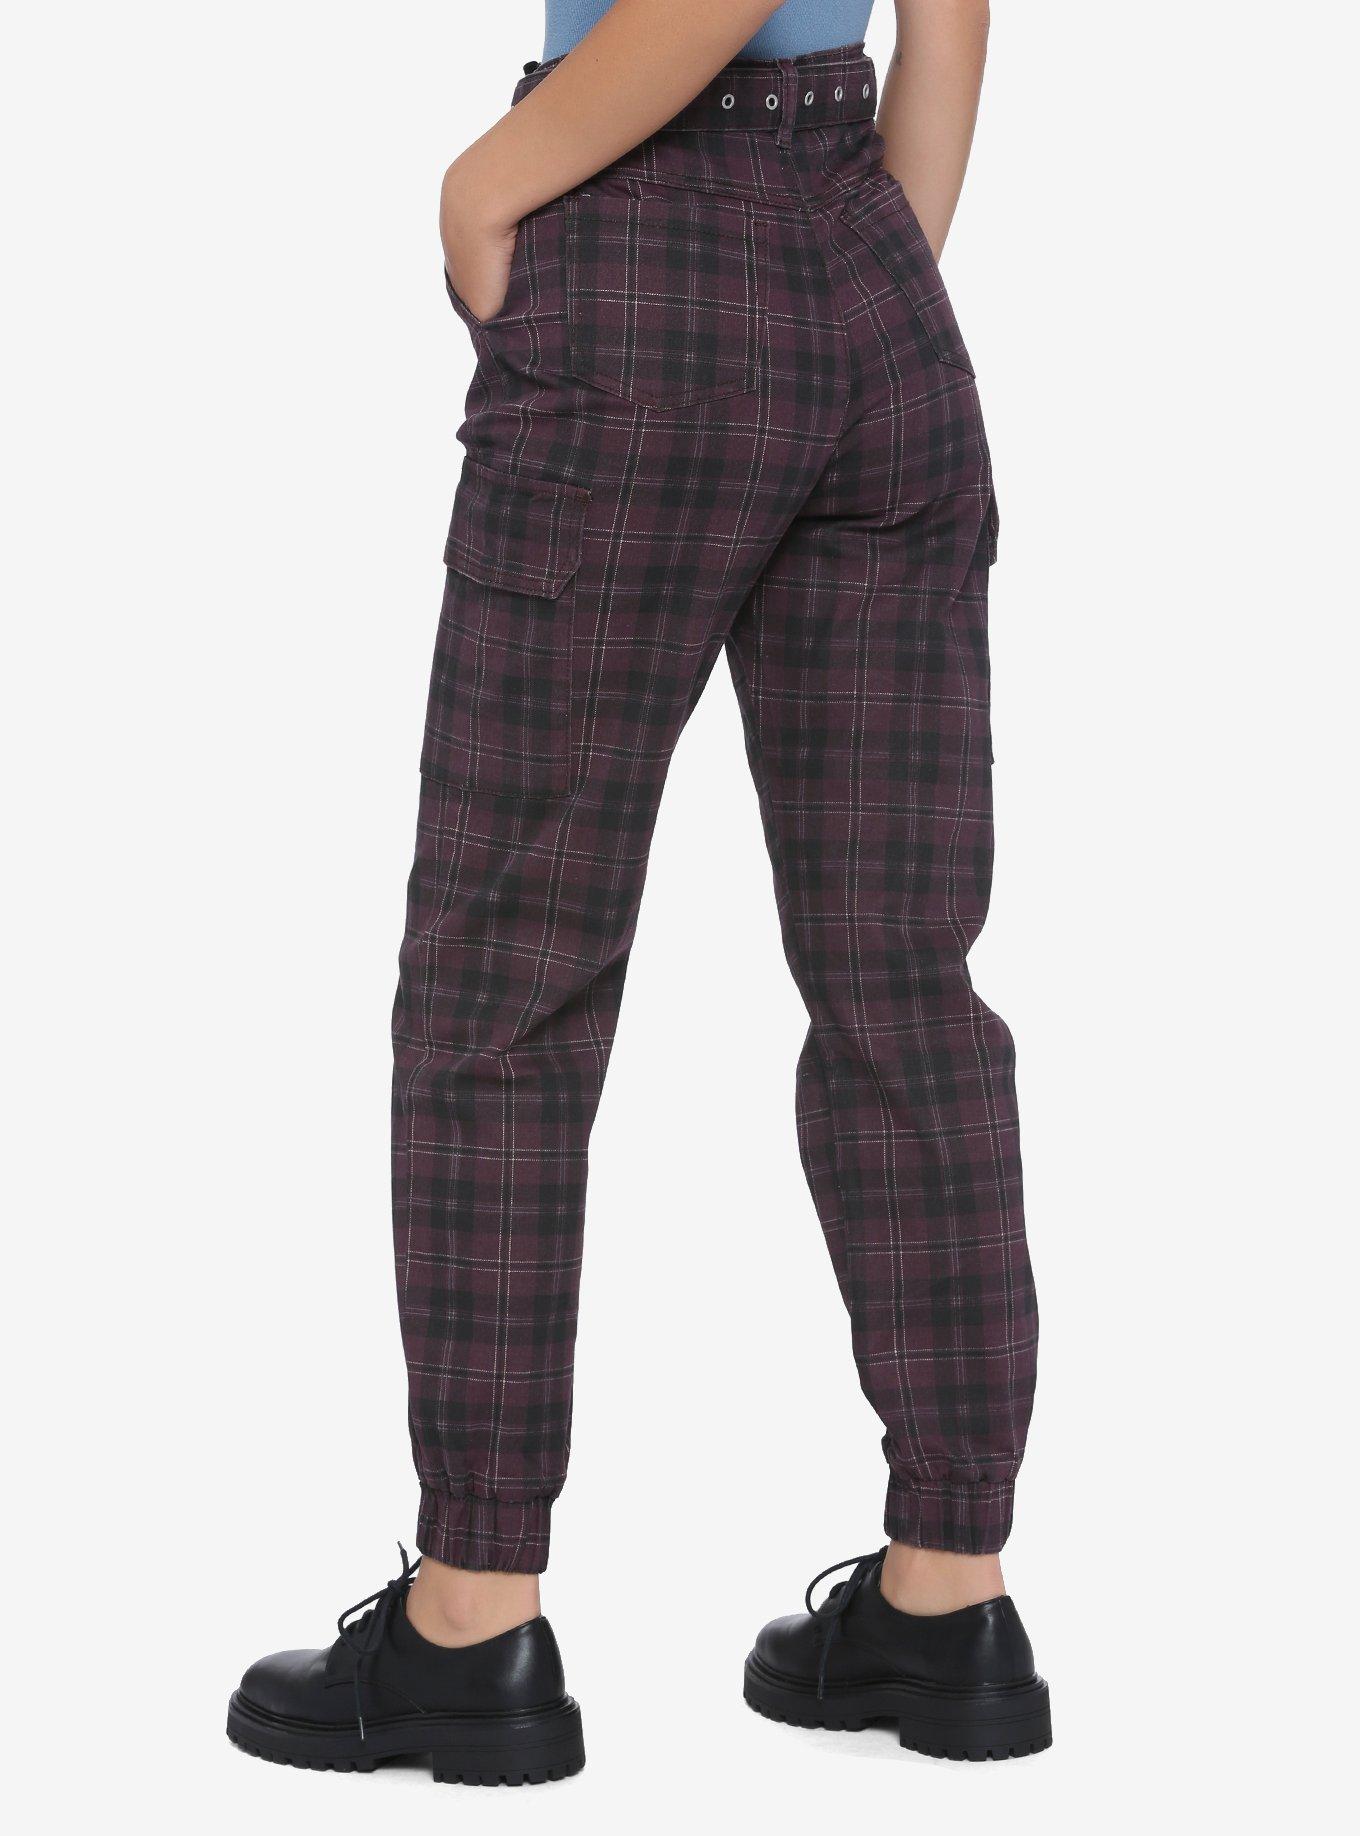 Black & Purple Plaid Cargo Pants, PLAID - PURPLE, alternate